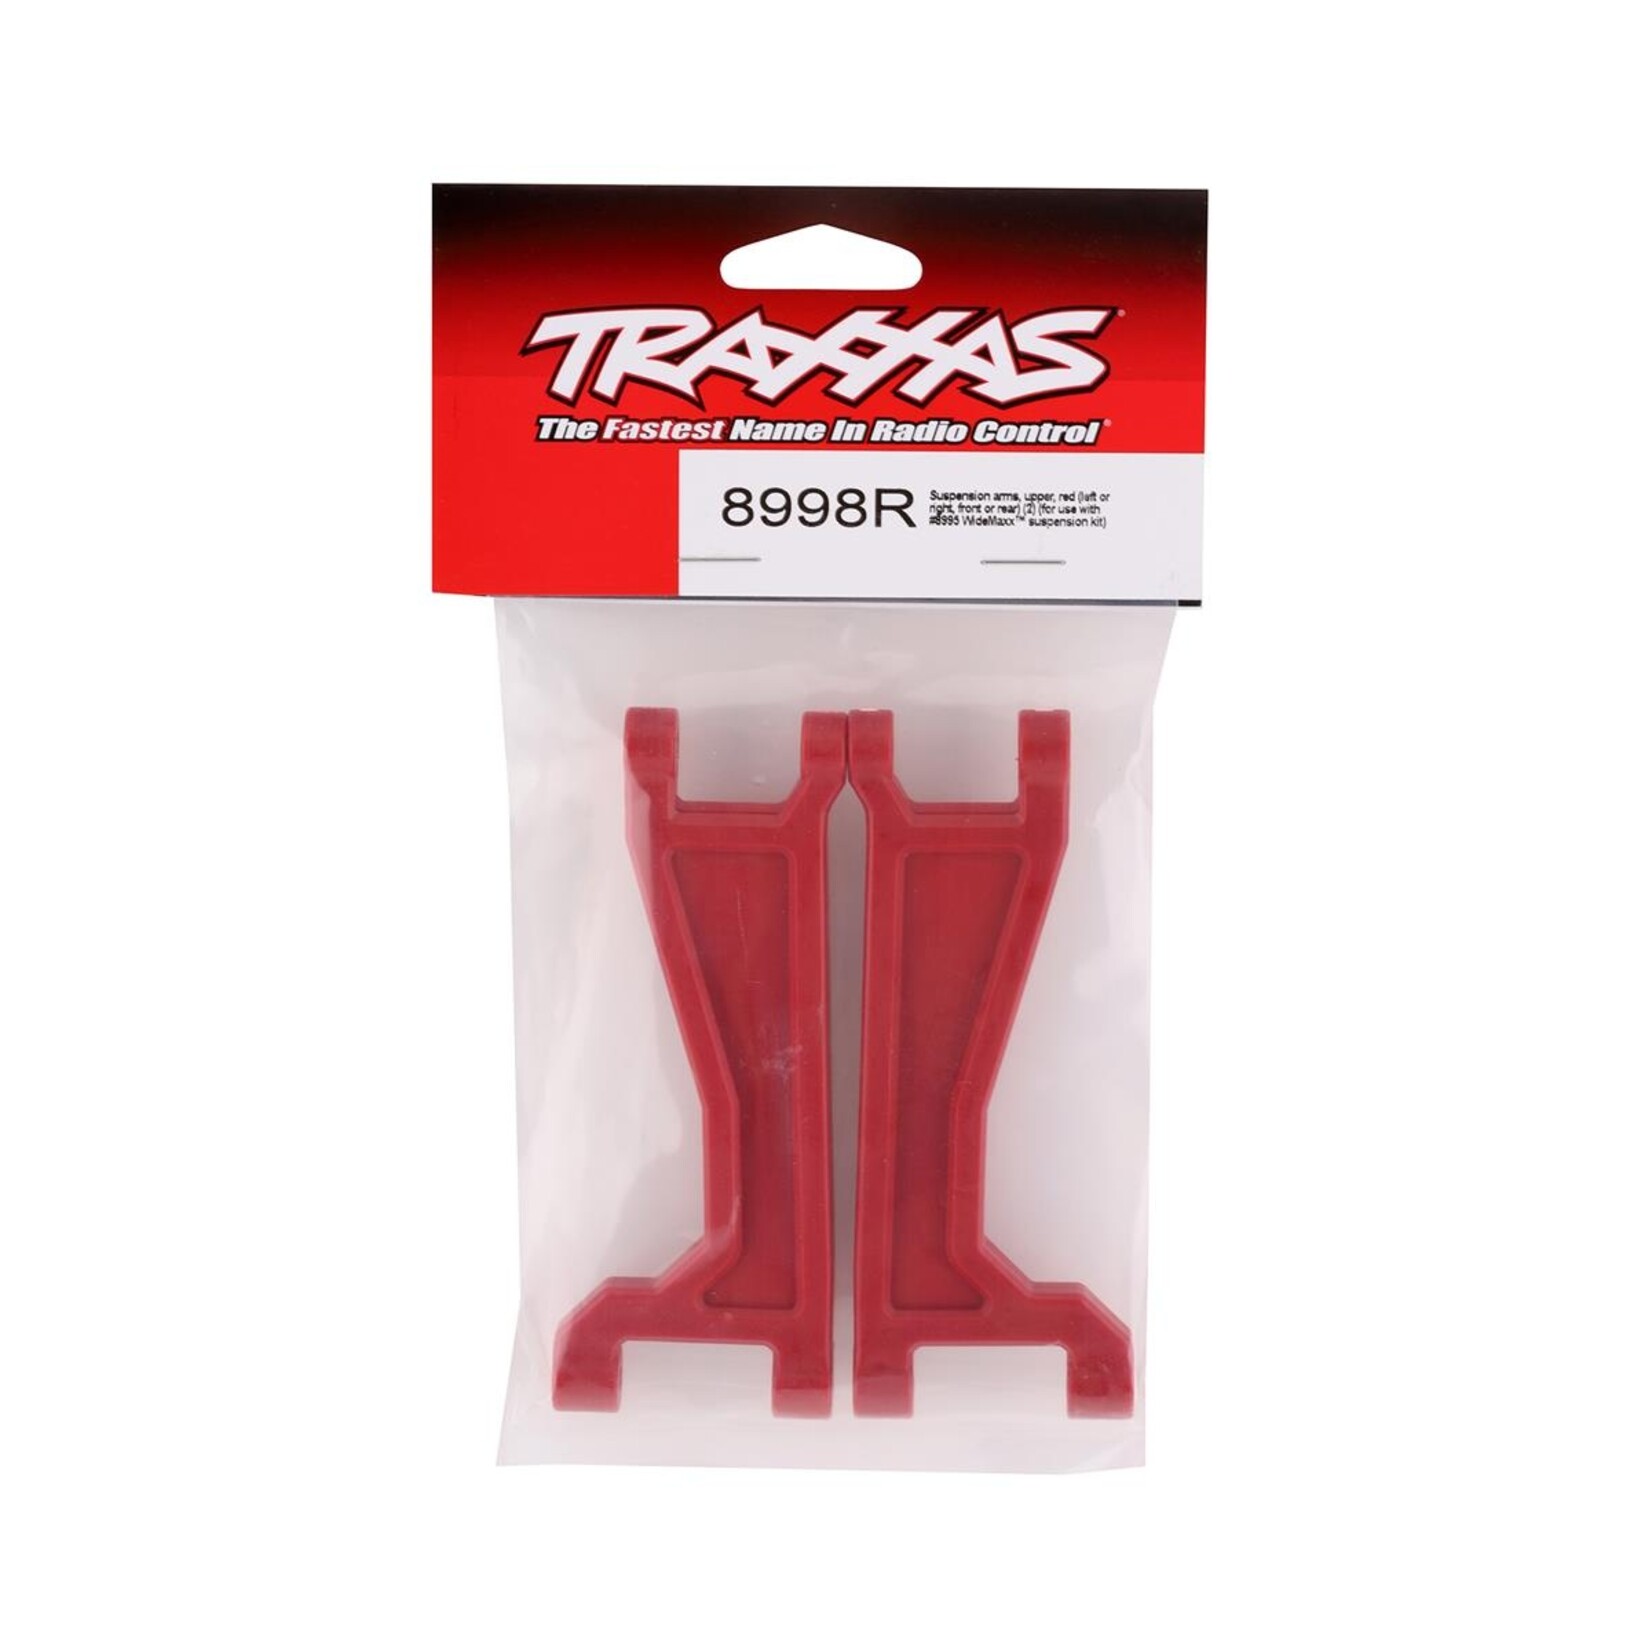 Traxxas Traxxas Maxx WideMaxx Upper Suspension Arms (Red) (2) #8998R